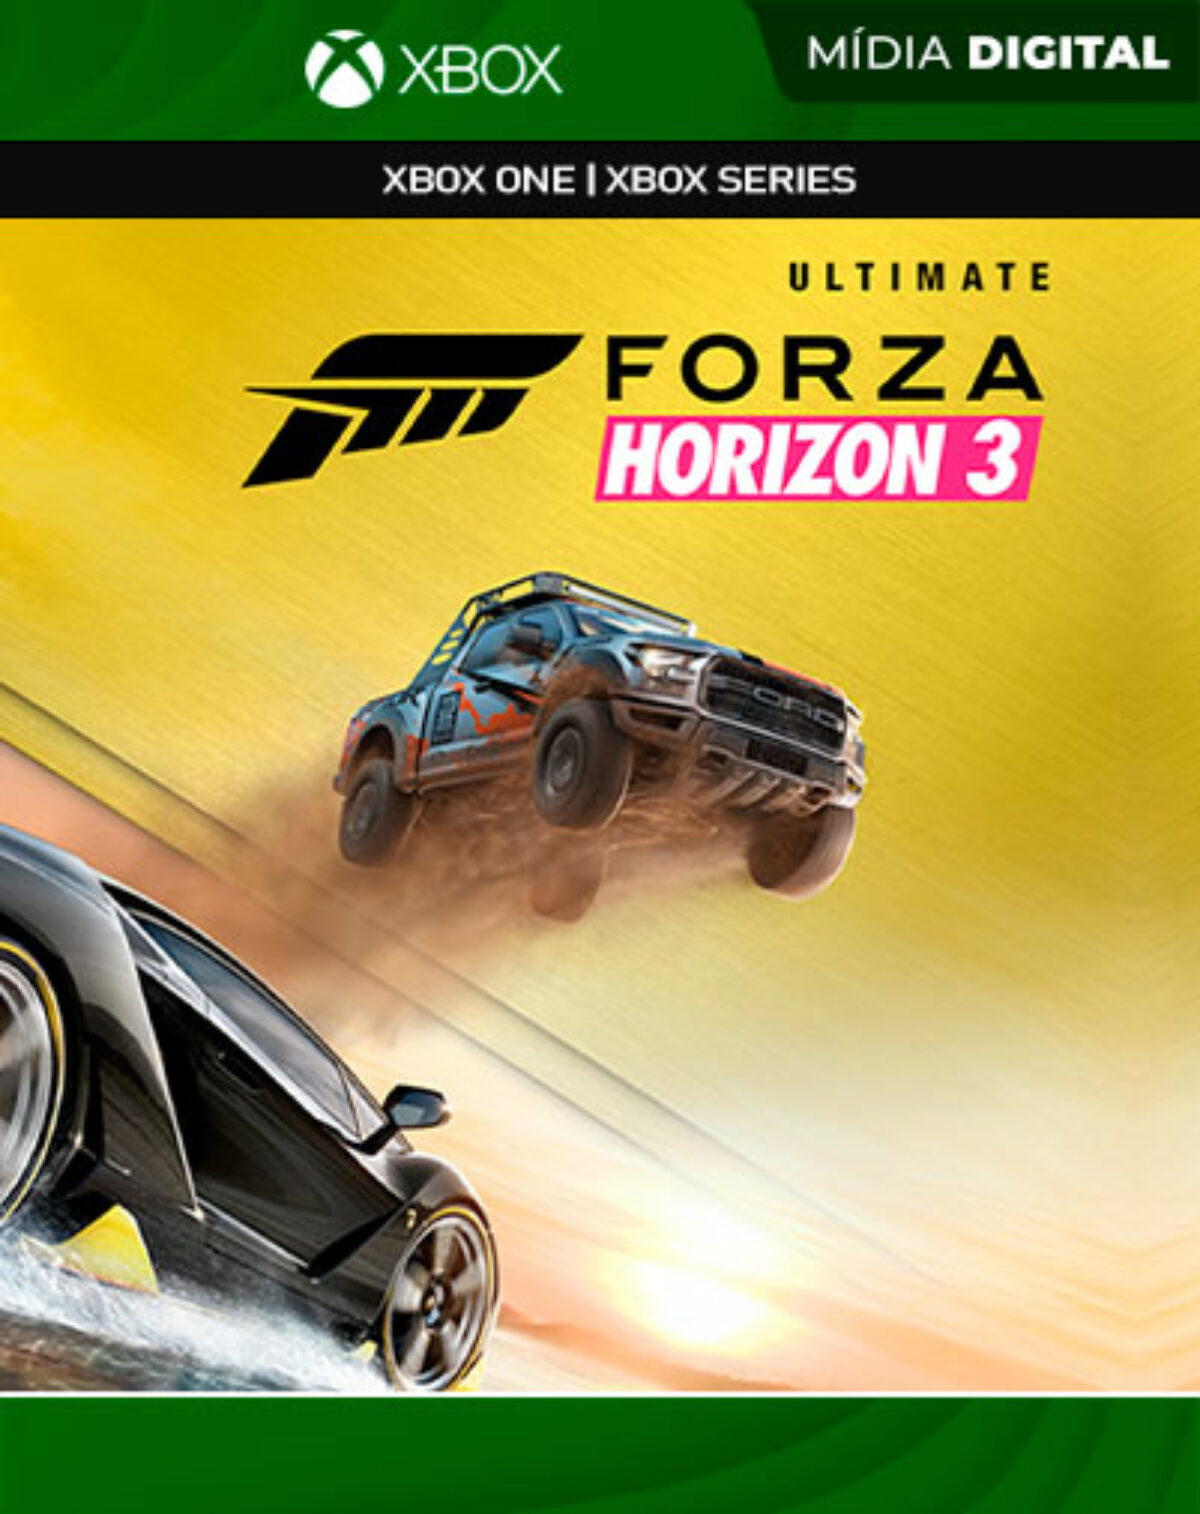 Saiba como jogar a campanha do game de corrida Forza Horizon 3